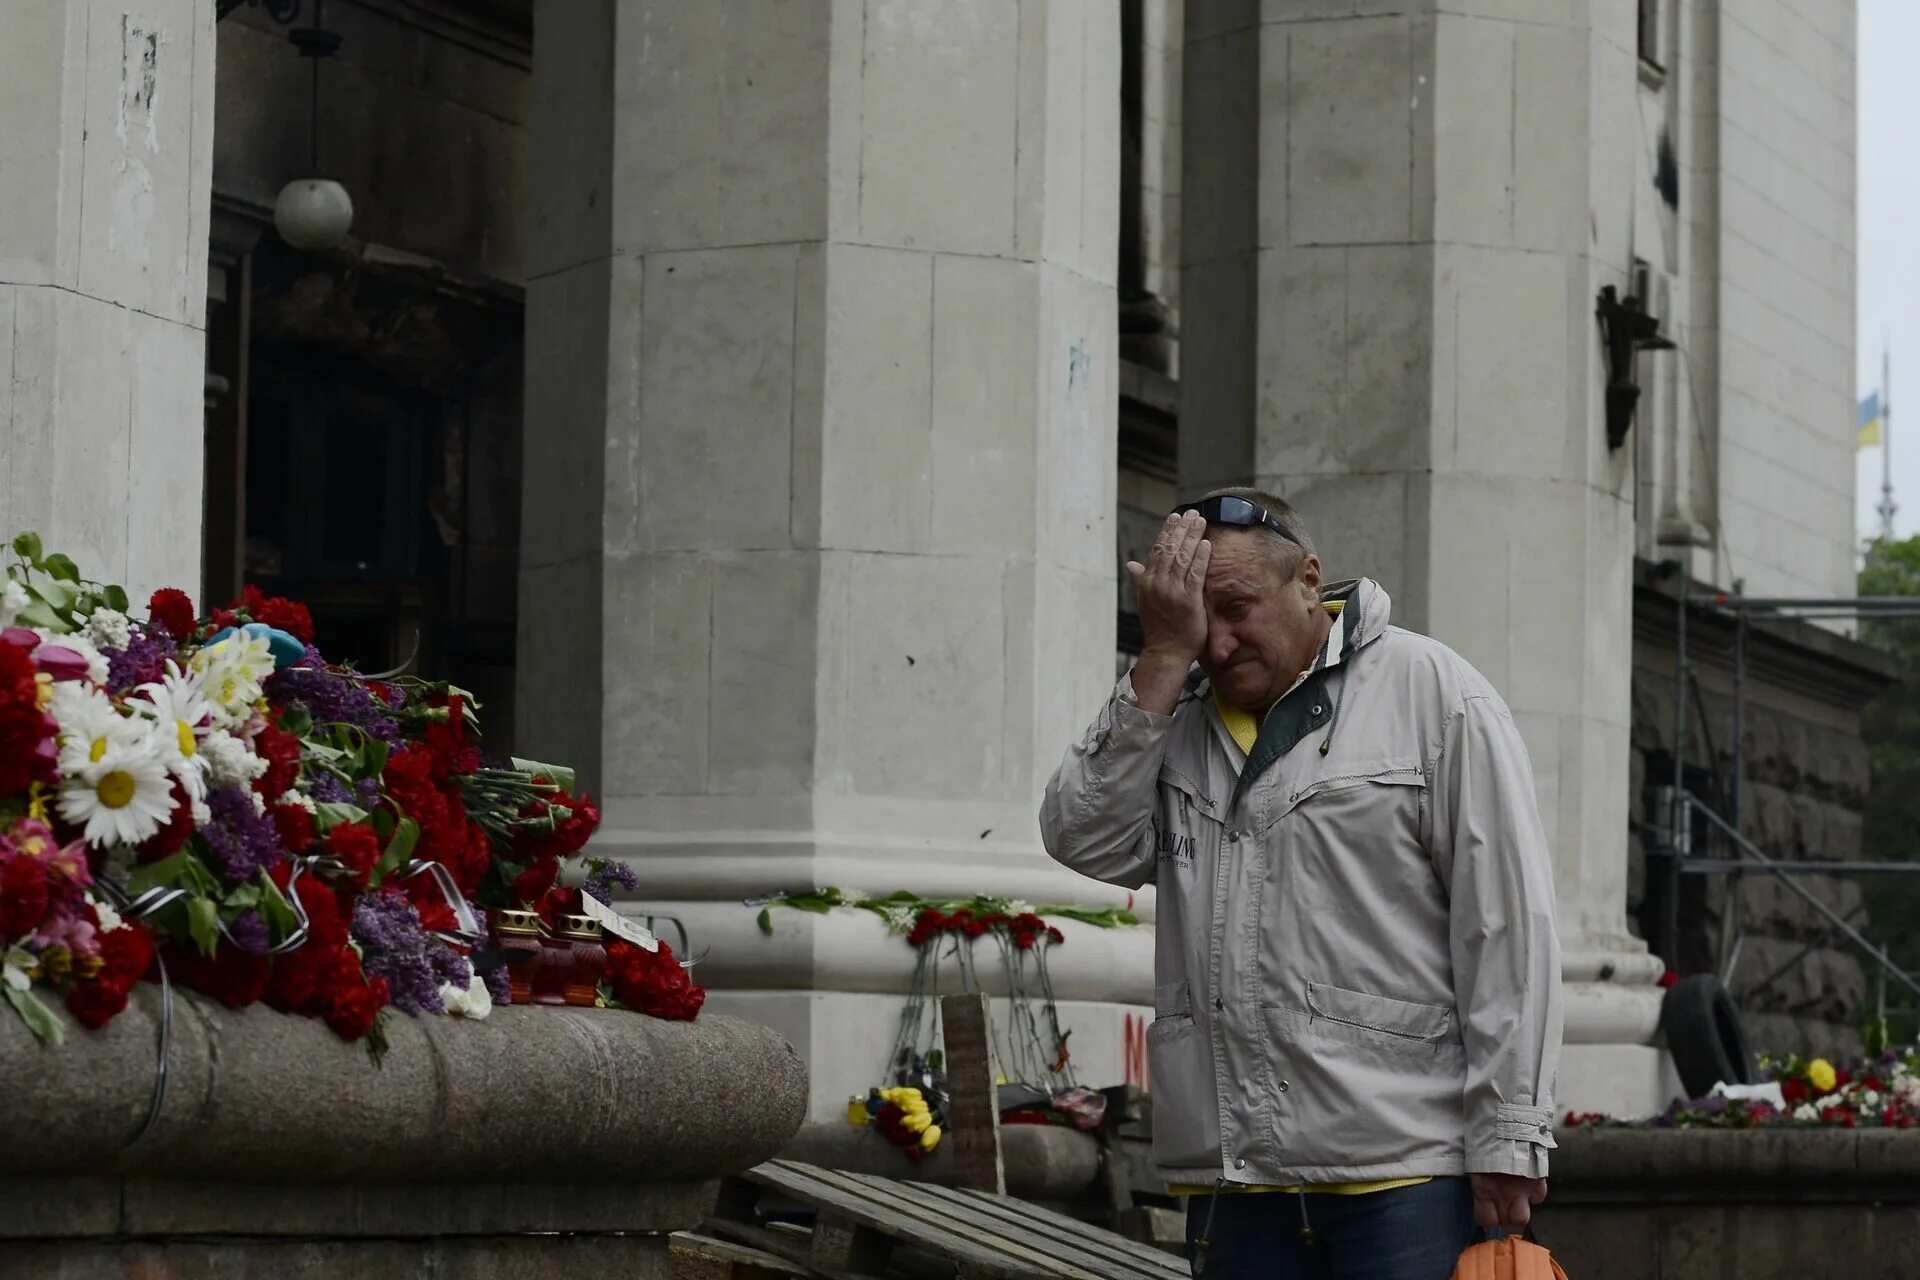 Где сейчас 2 мая. Дом профсоюзов в Одессе жертвы. Одесса 2 мая дом профсоюзов. Жертвы в Одессе в доме профсоюзов 2 мая. Трагедия в Одессе 2 мая 2014.